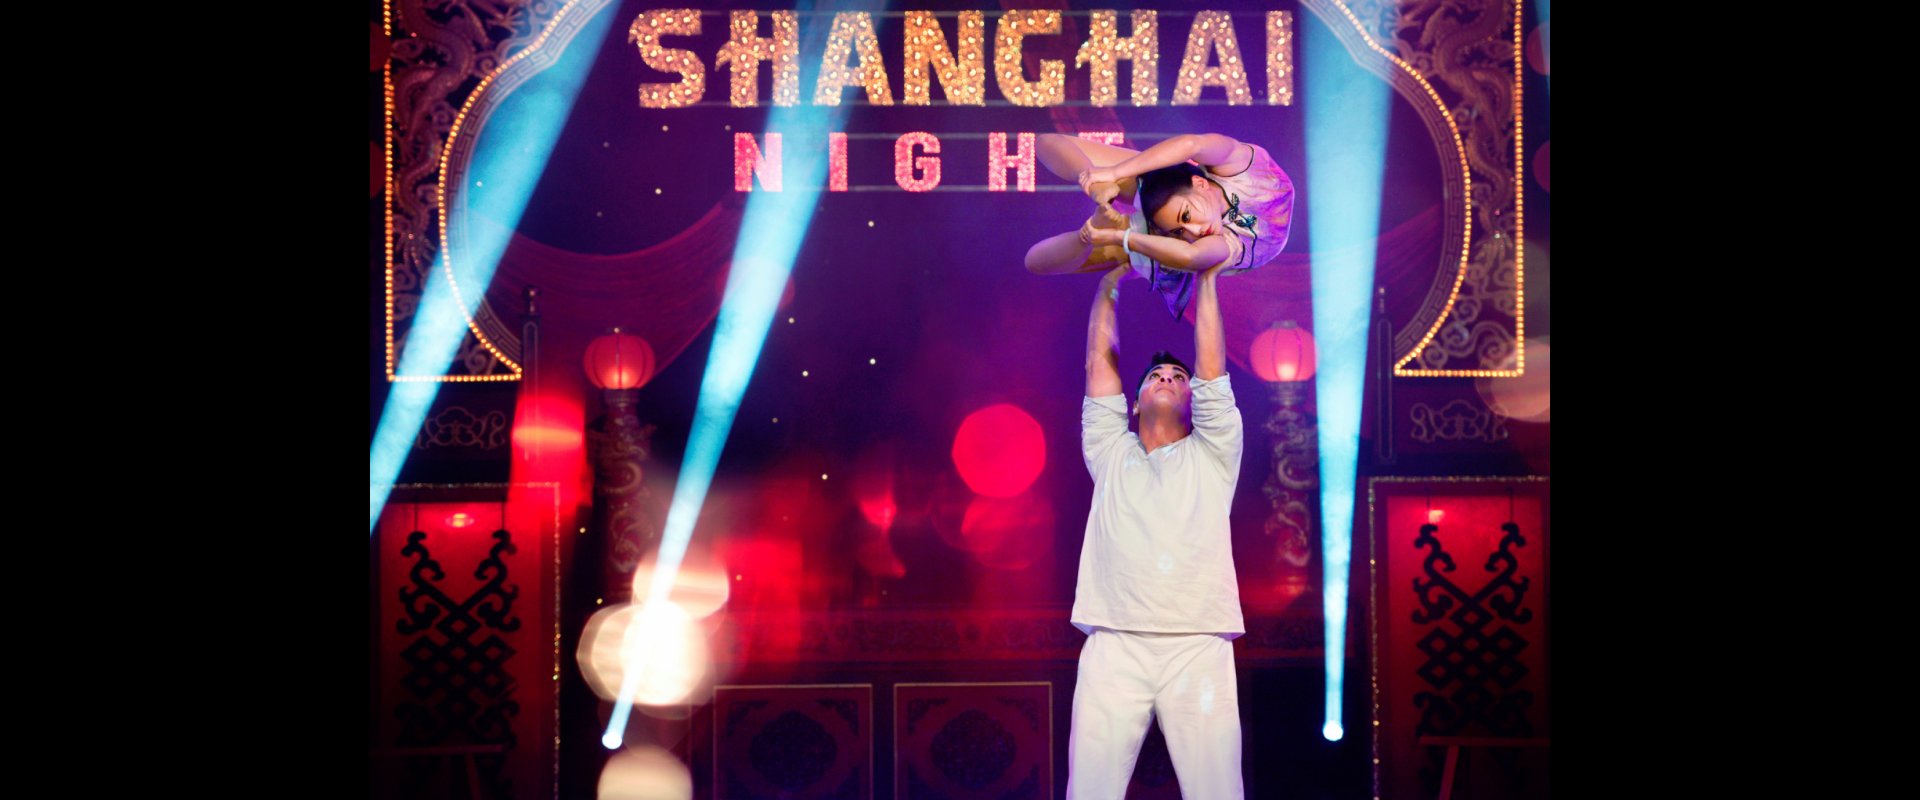 Chinesischer Nationalcircus: Shanghai Nights